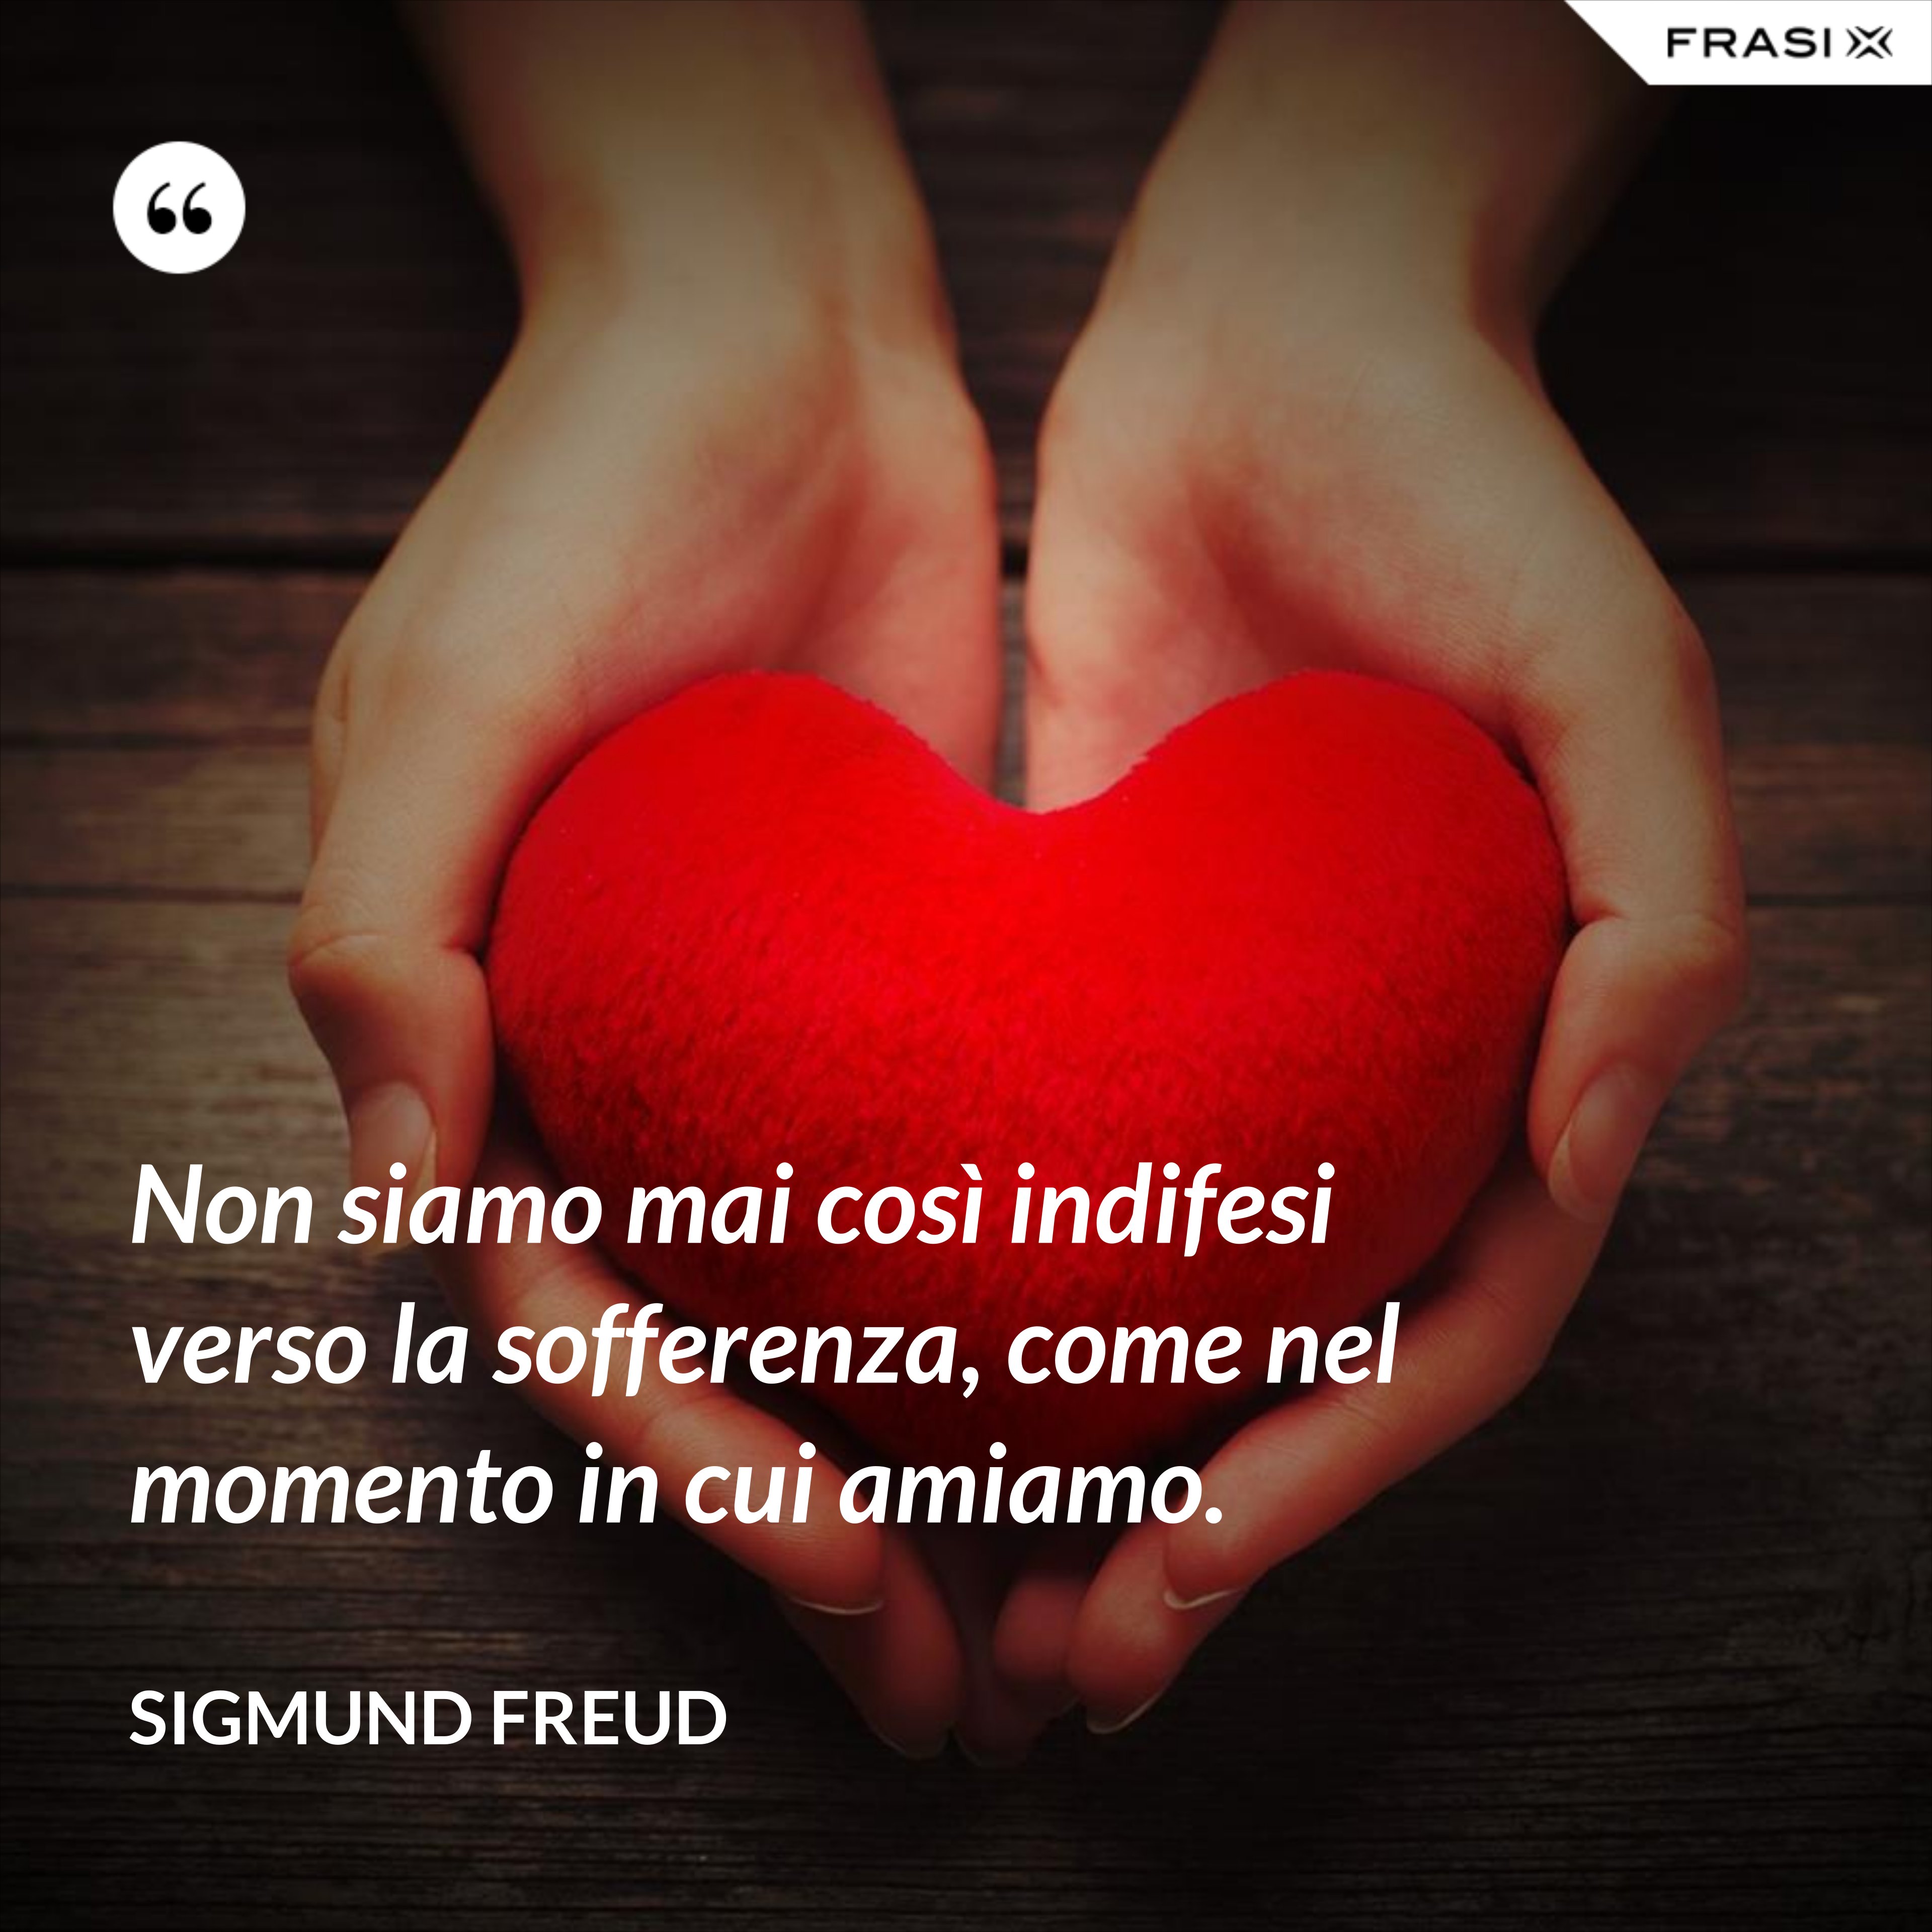 Non siamo mai così indifesi verso la sofferenza, come nel momento in cui amiamo. - Sigmund Freud